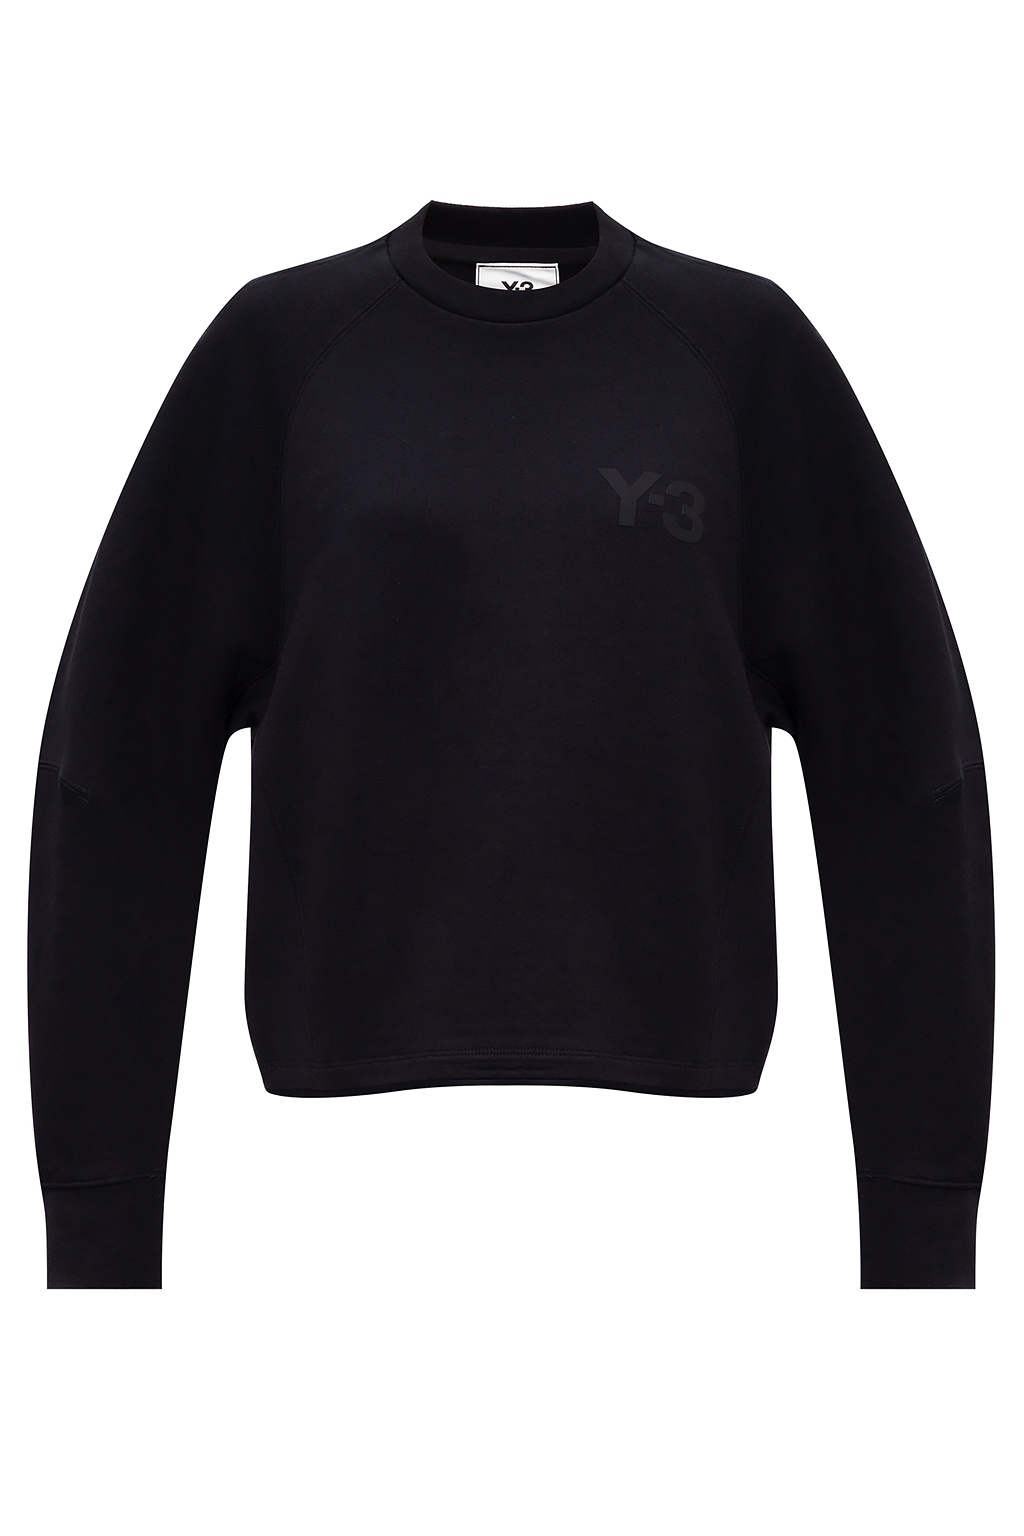 Y-3 Yohji Yamamoto Oversize F87310 sweatshirt